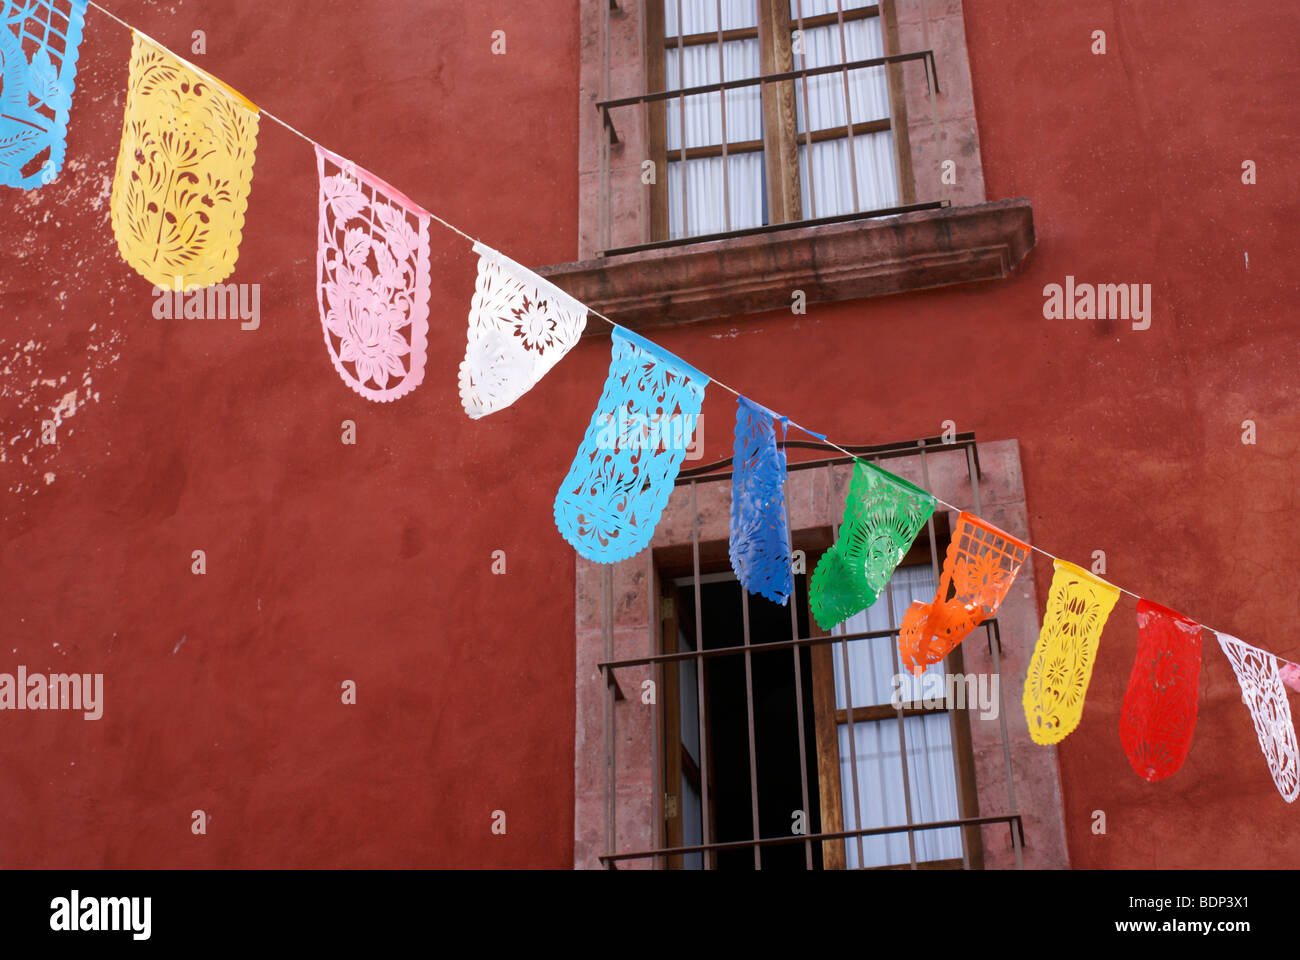 Papel picado découpures mexicaines colorées de la décoration d'une rue à San Miguel de Allende, Mexique Banque D'Images